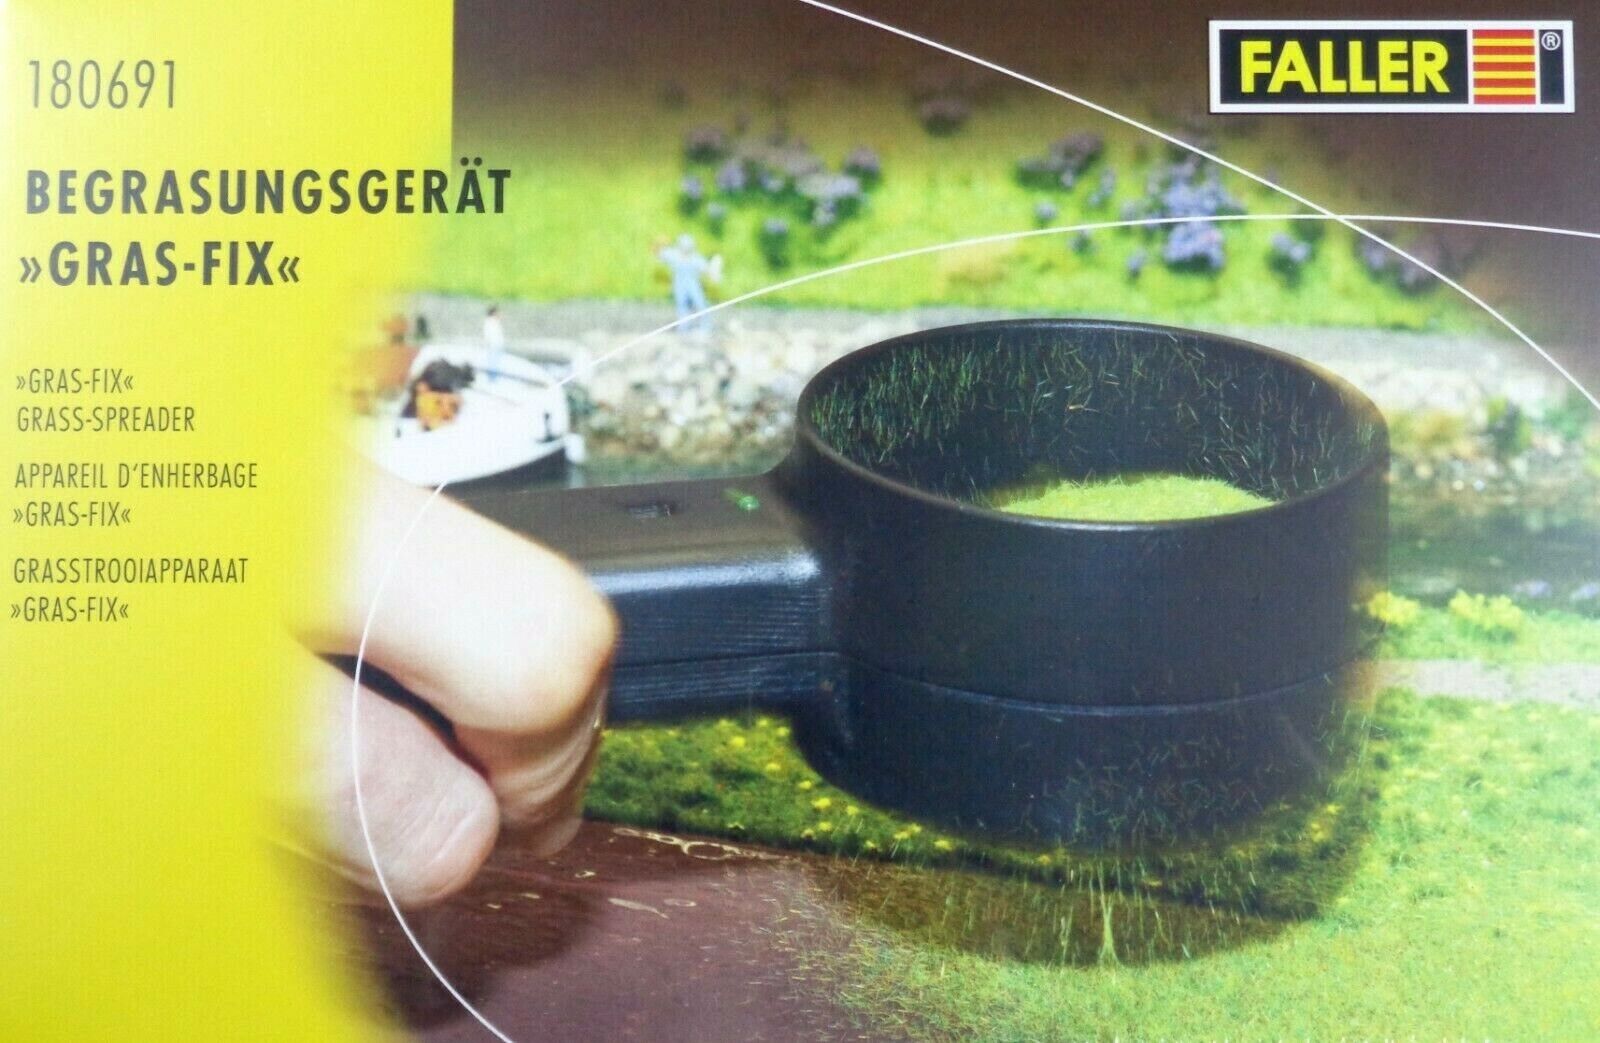 Faller 180691 Begrasungsgerät Gras-Fix NEU in OVP